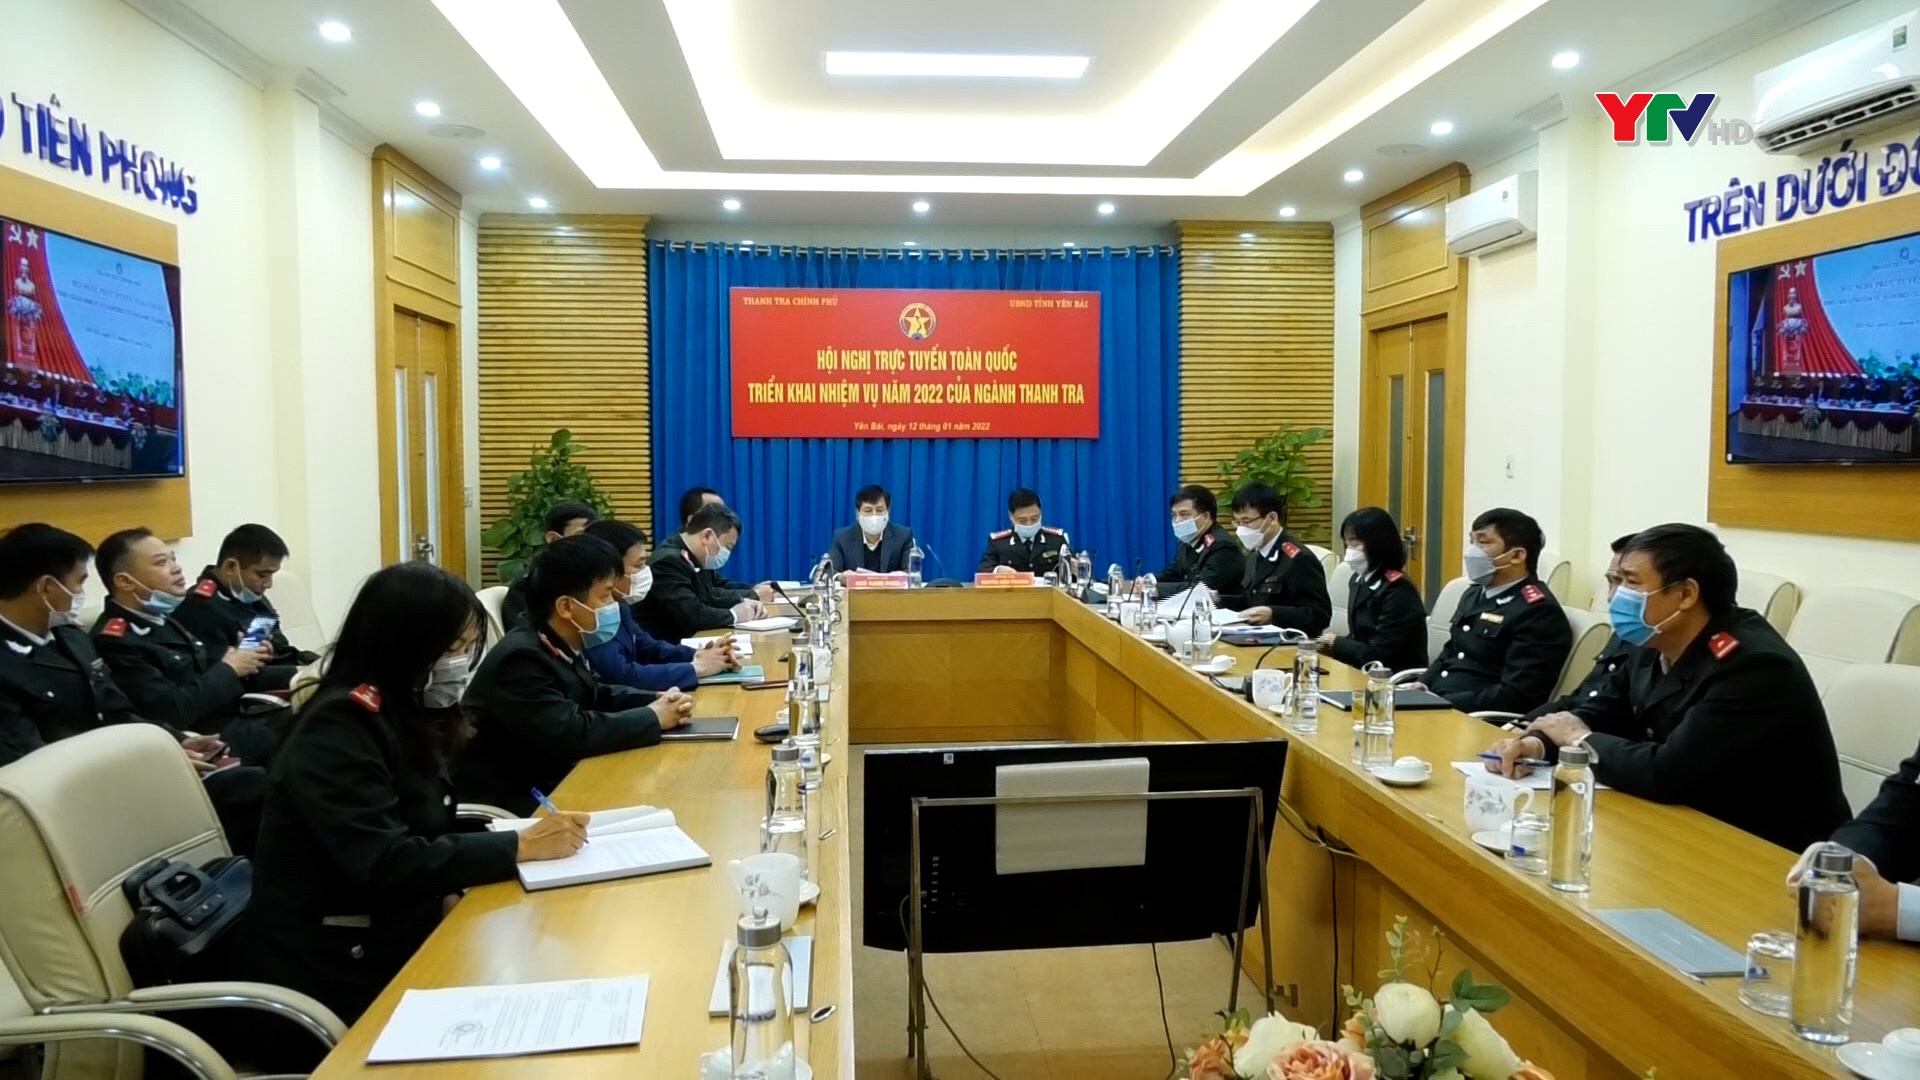 Thanh Tra Chính phủ tổ chức Hội nghị trực tuyến triển khai công tác năm 2022